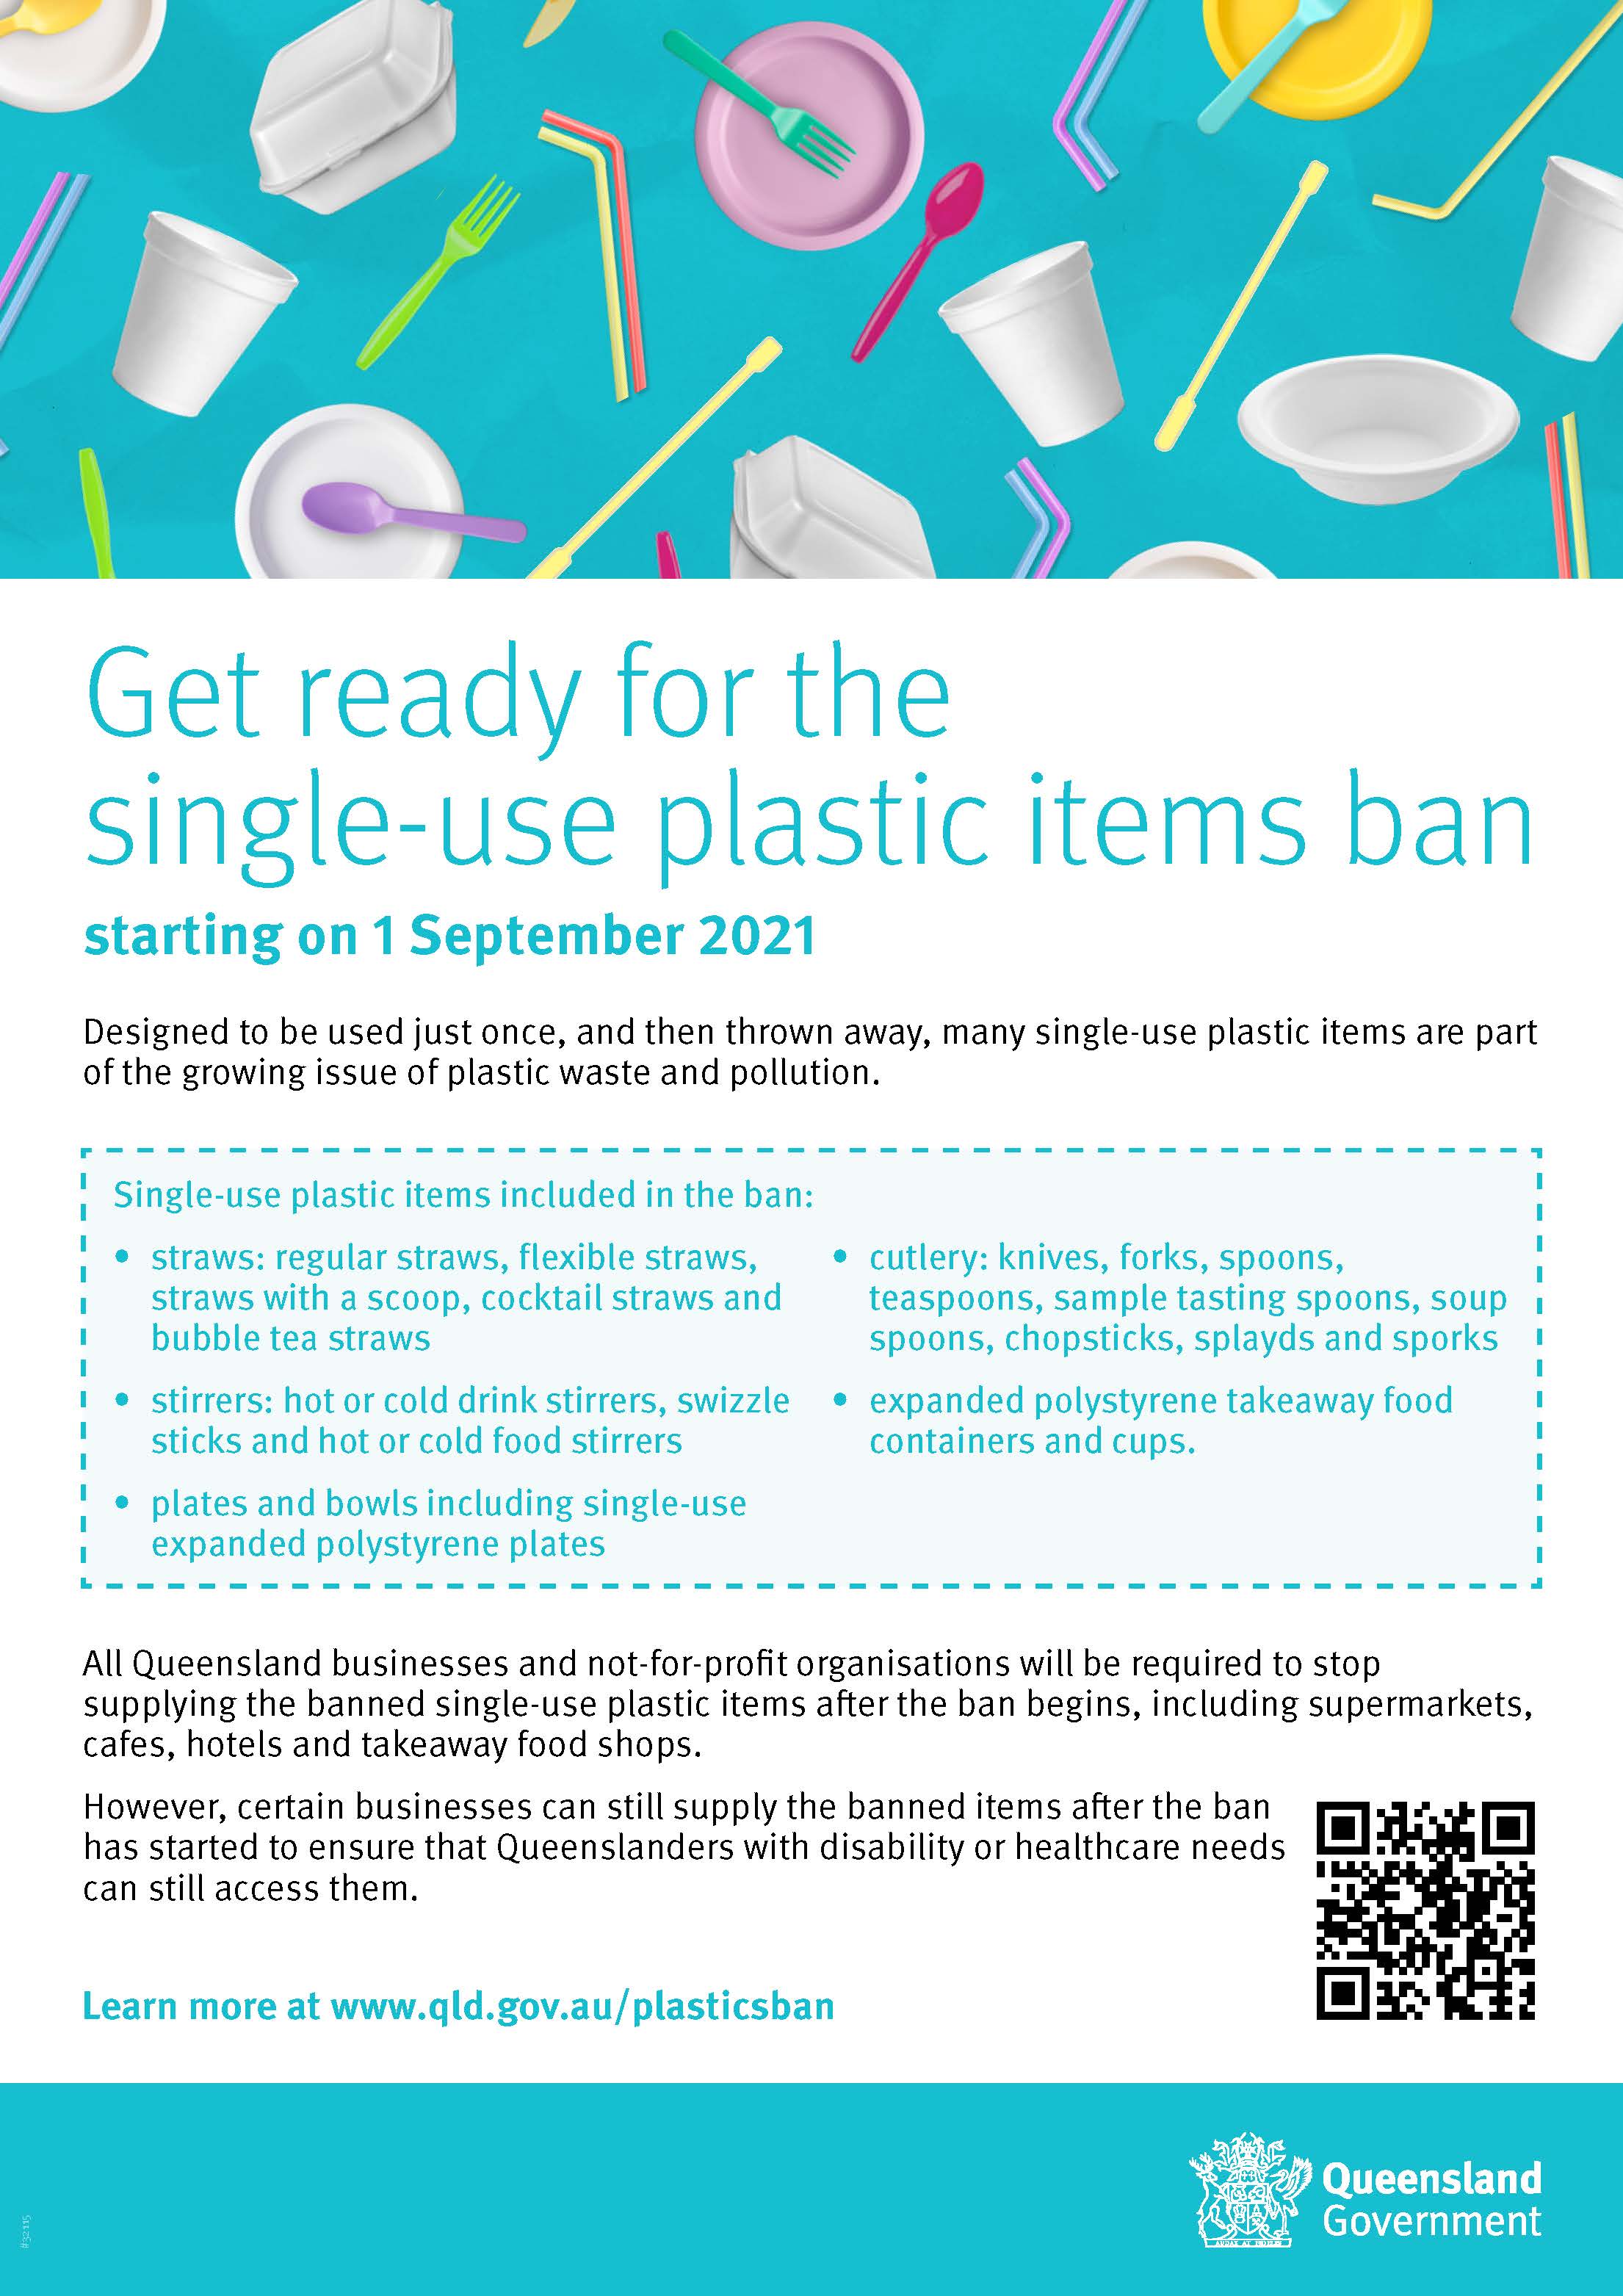 Plastic ban - 1 September